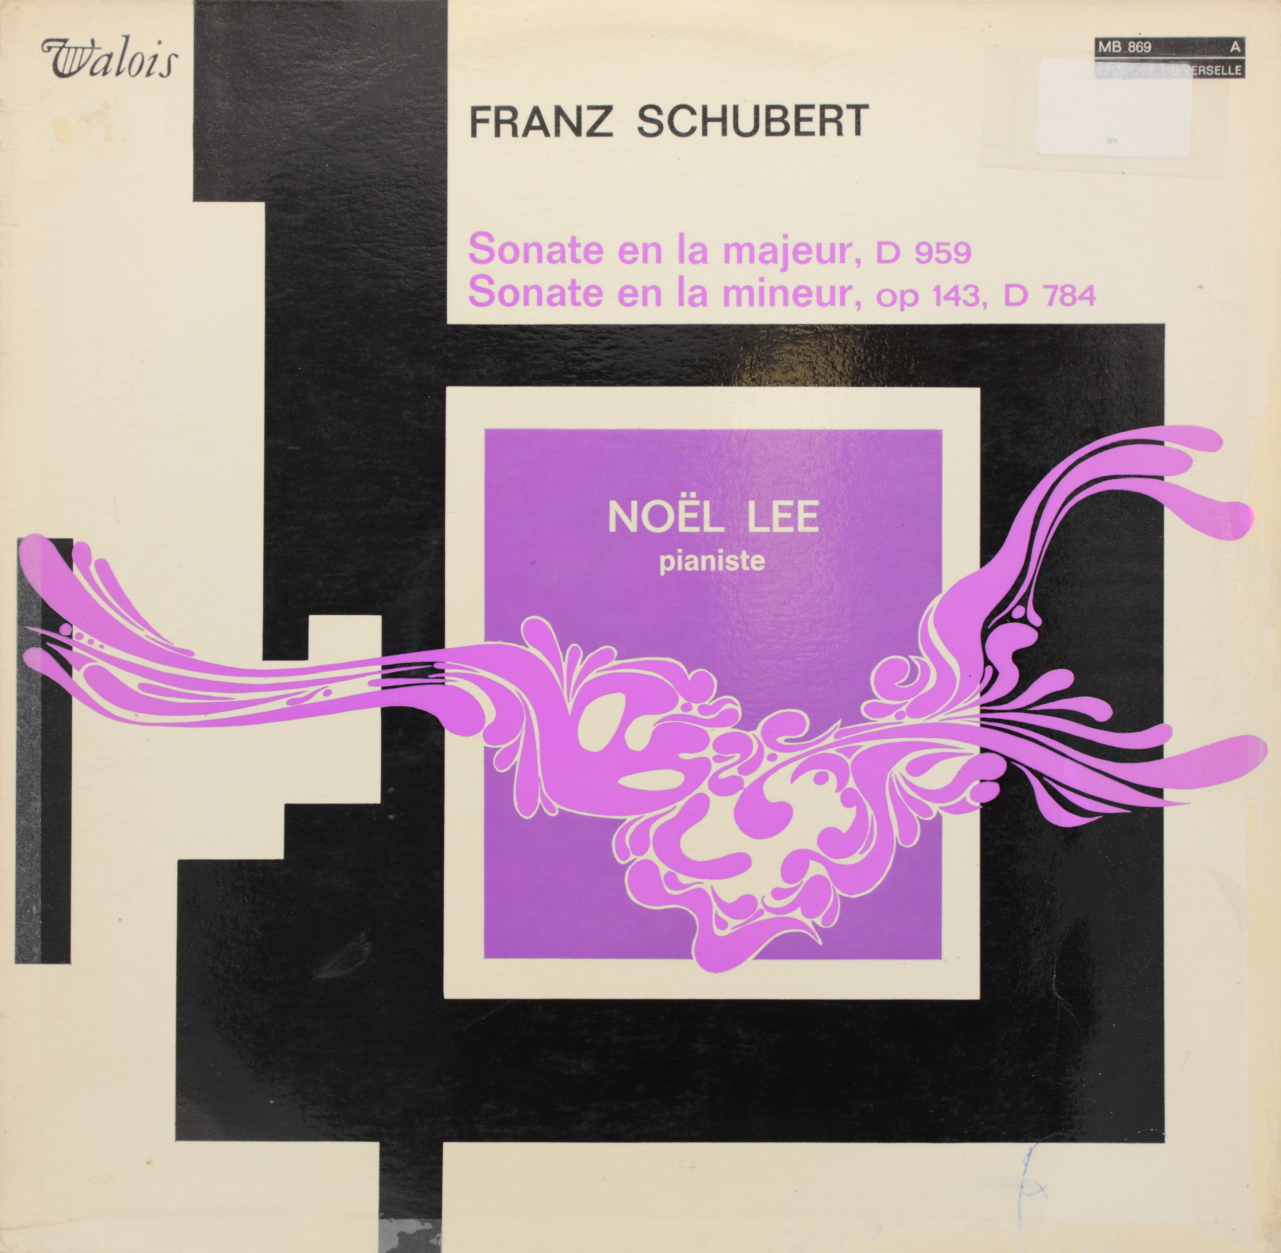 Schubert: Sonate en la majeur, D 959; Sonate en la mineur, op 143, D 784